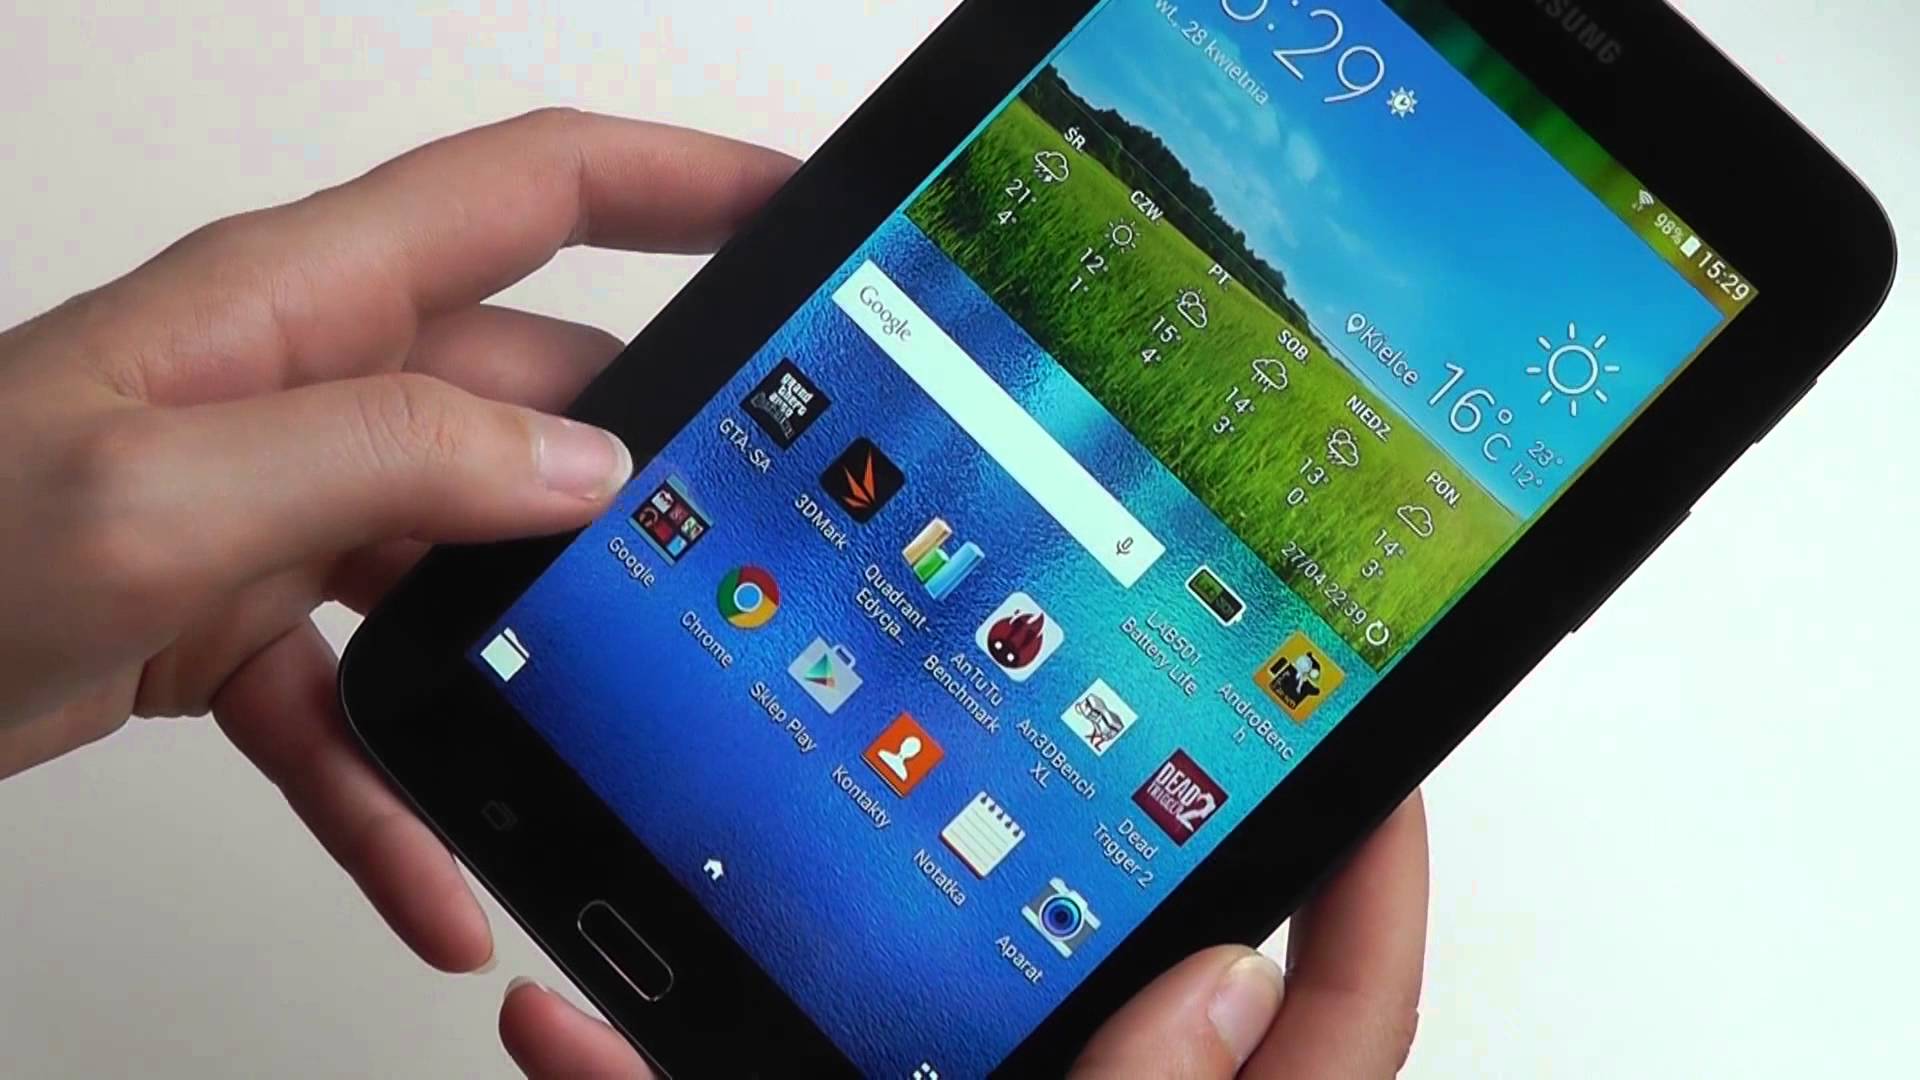 планшет Galaxy Tab 3 7.0 Lite Plus